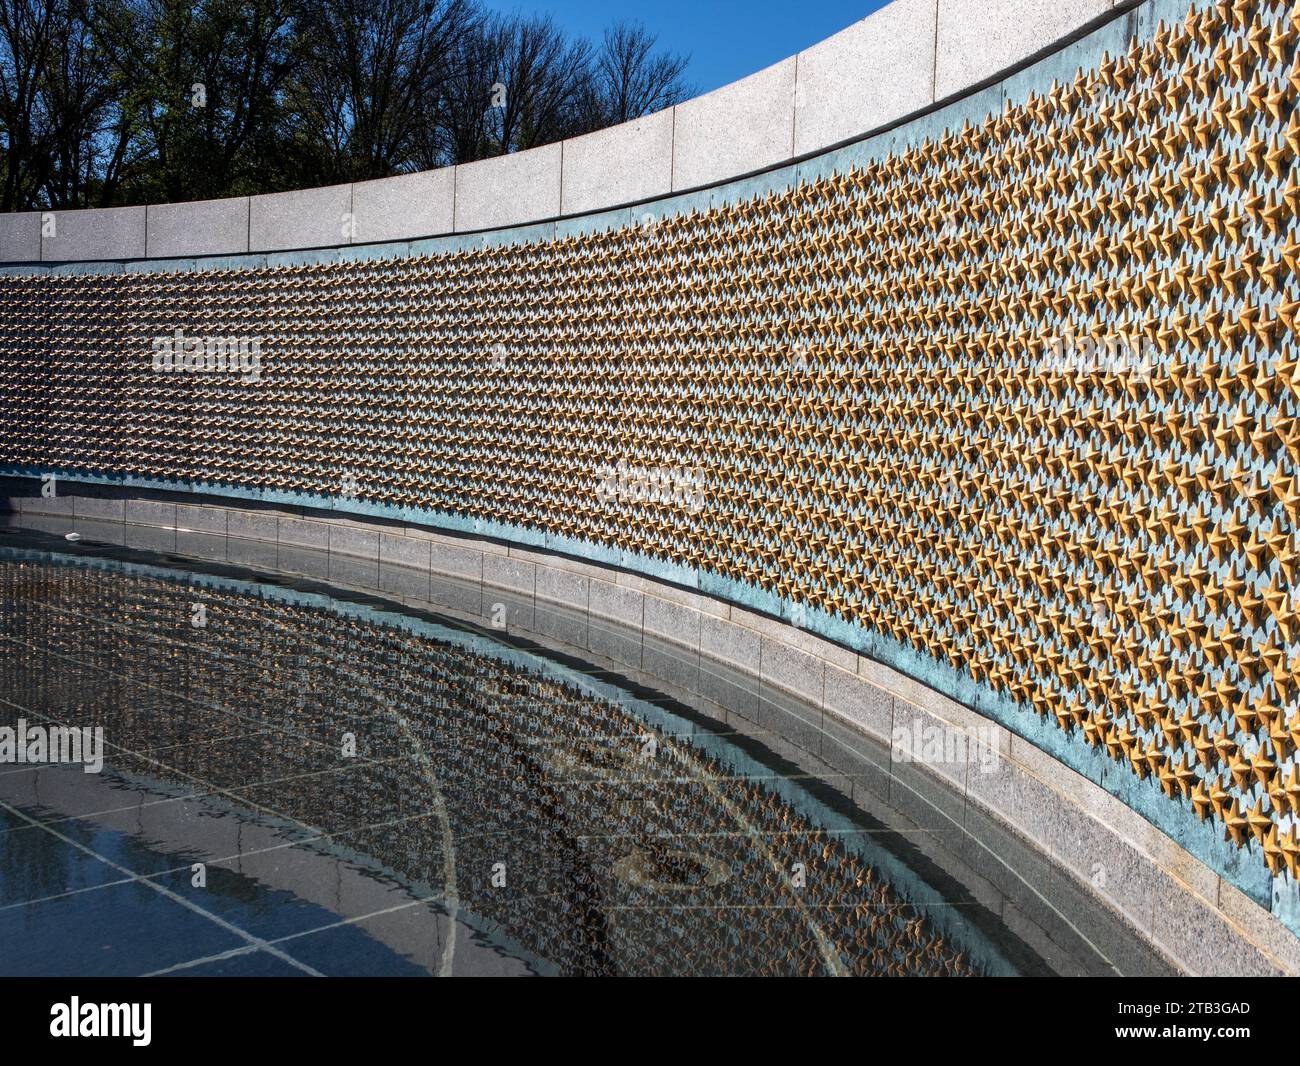 Il World War 2 Memorial, Washington DC per tutti i soldati e coloro che morirono in tutti i teatri durante la seconda guerra mondiale, rappresentando soldati di ogni stato Foto Stock